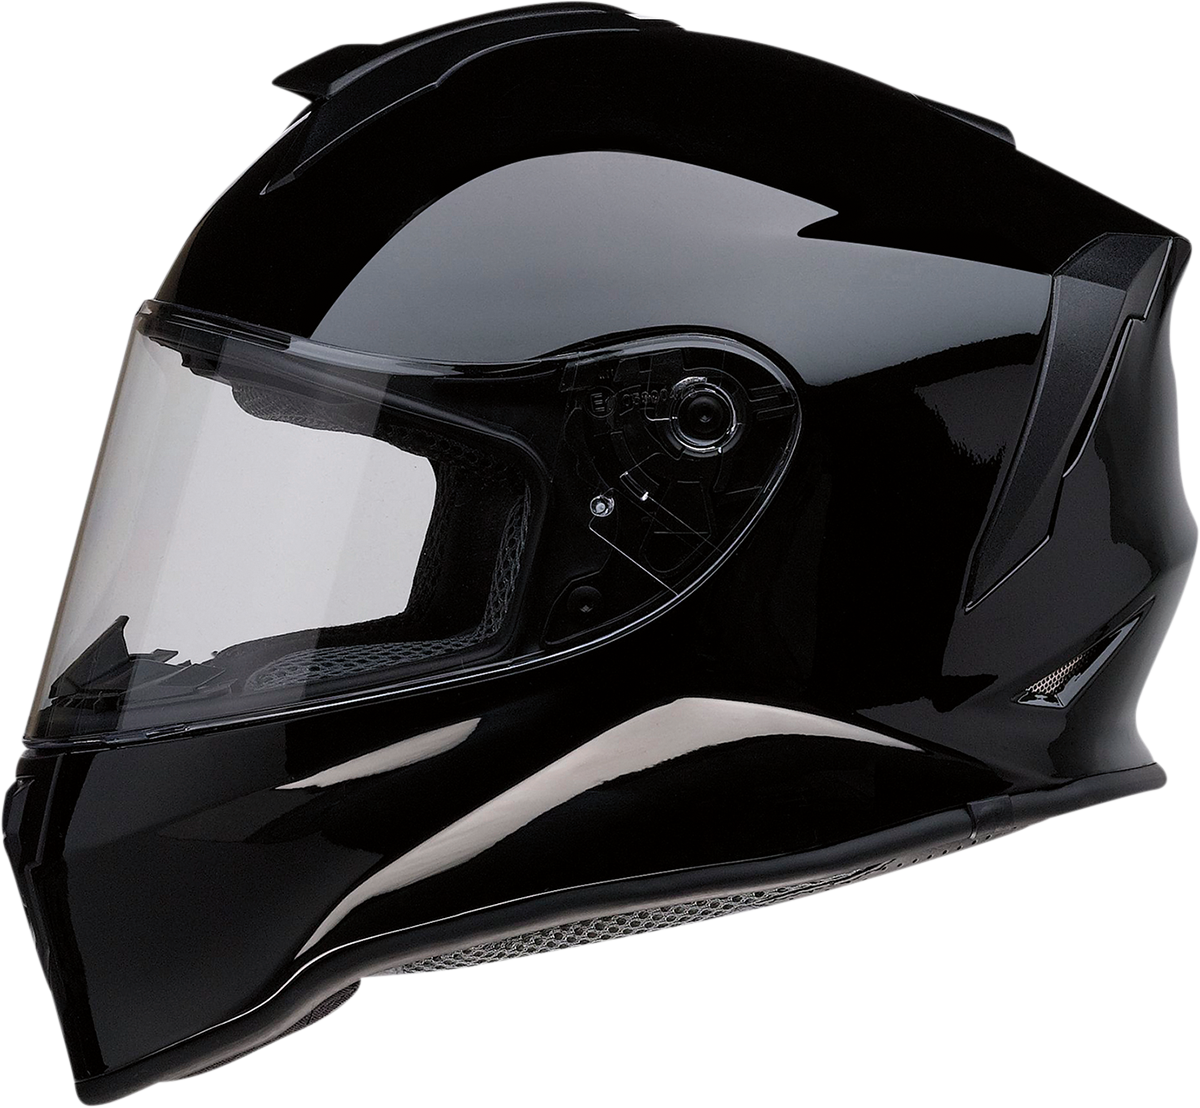 Z1R Youth Warrant Helmet - Gloss Black - Medium 0102-0243